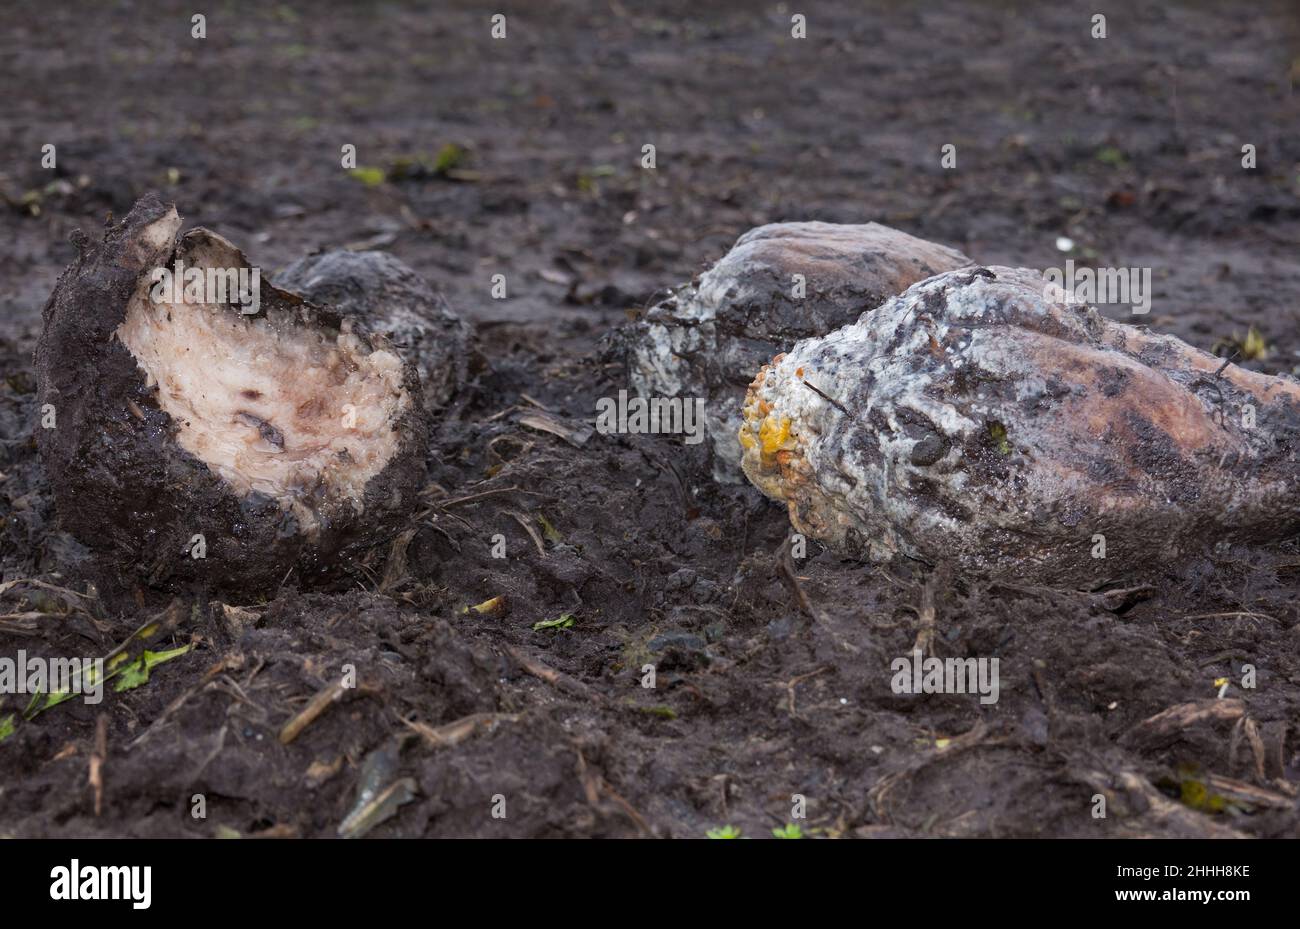 Récolte perdue : trois sugarbeets pourris, moulés, minces et rongé laissés sur le champ Banque D'Images